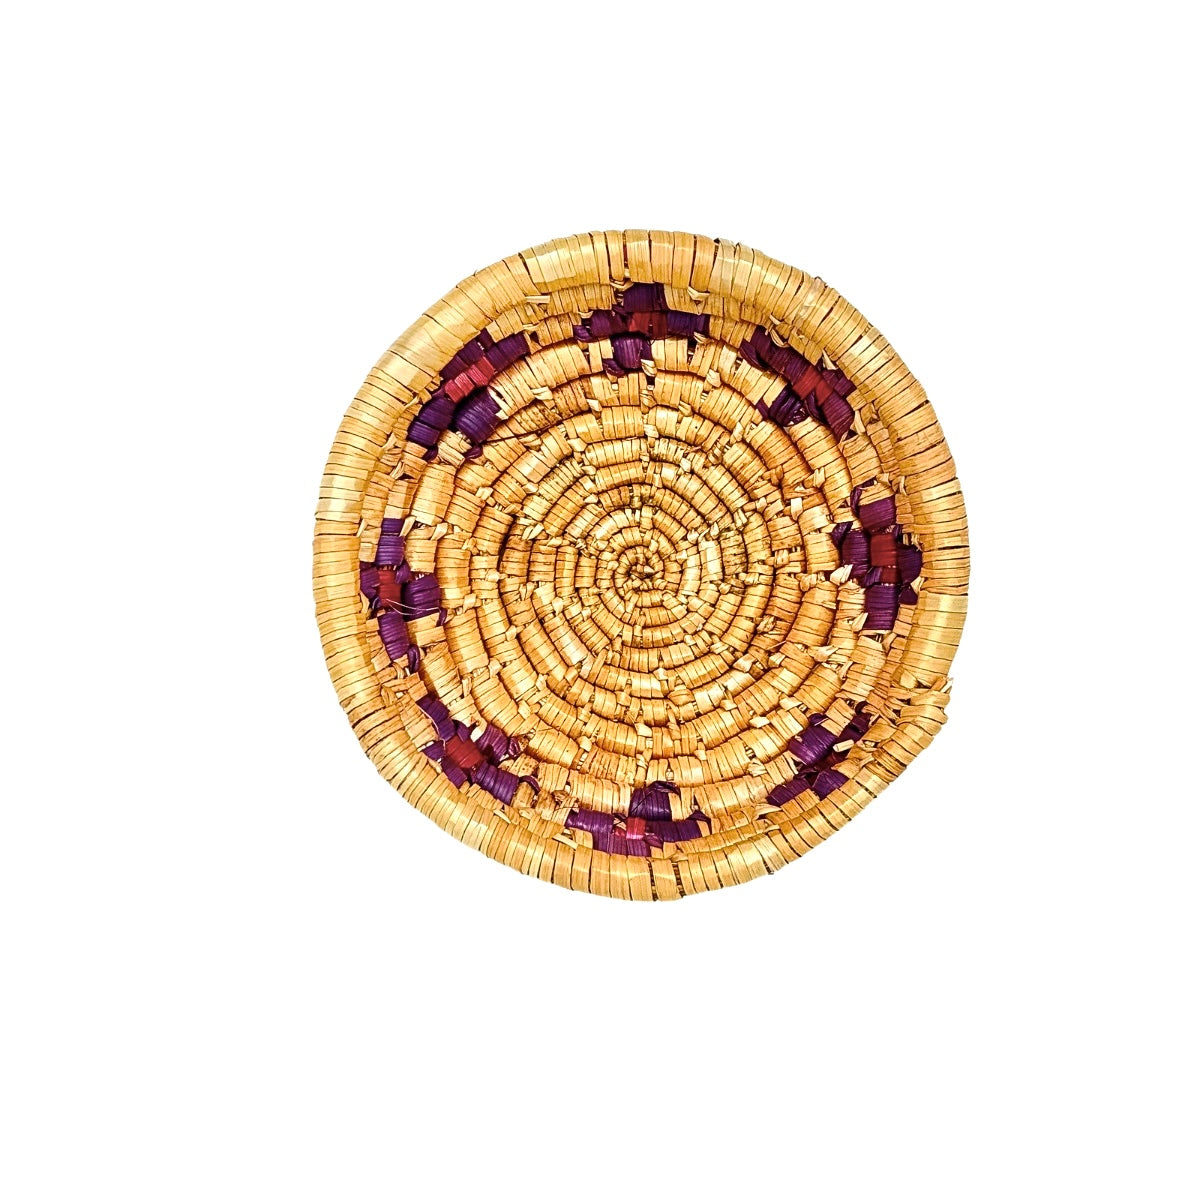 Basket by Women in Salfit (S) - purple & magenta